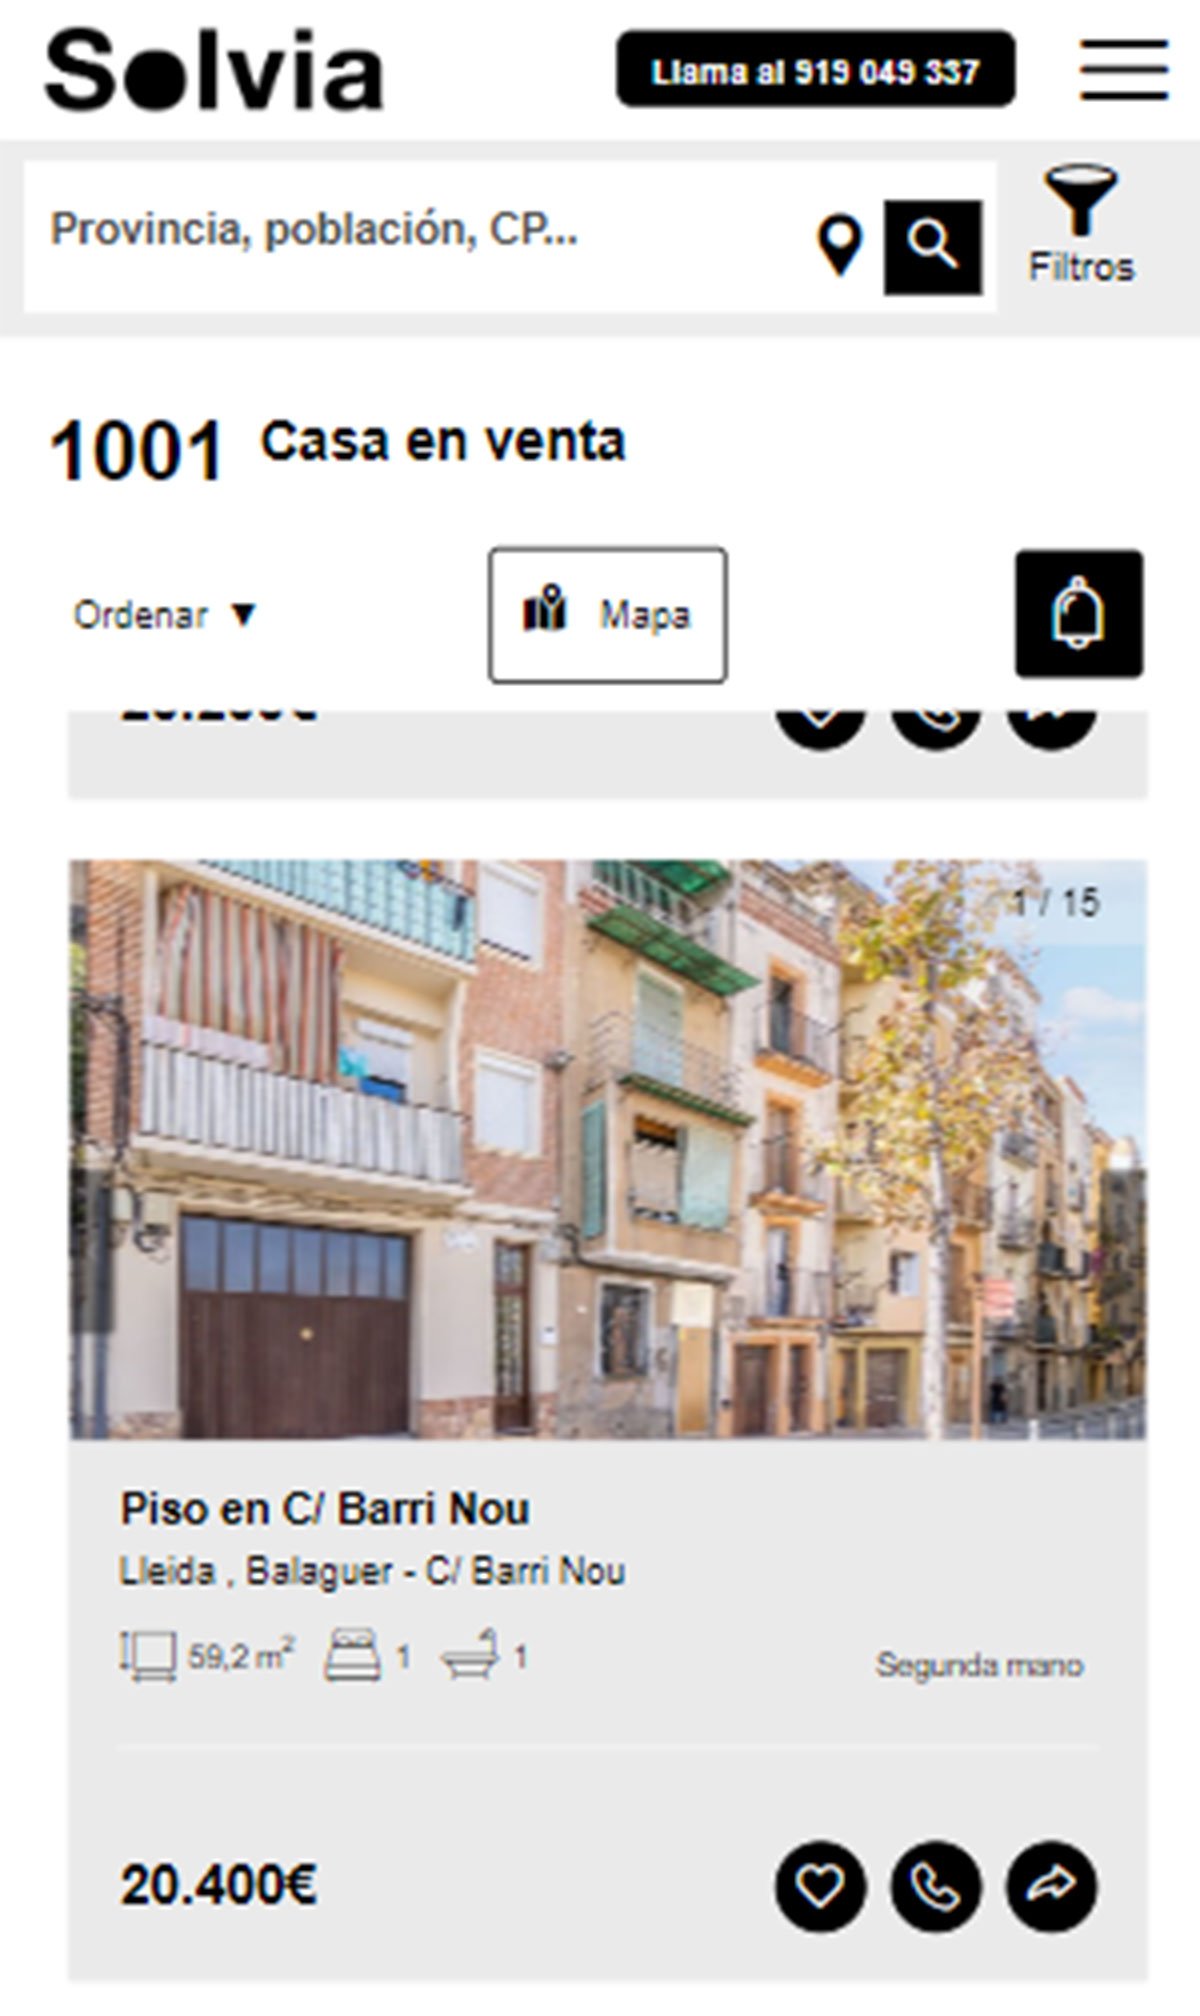 Casa a la venta por 20.000 euros